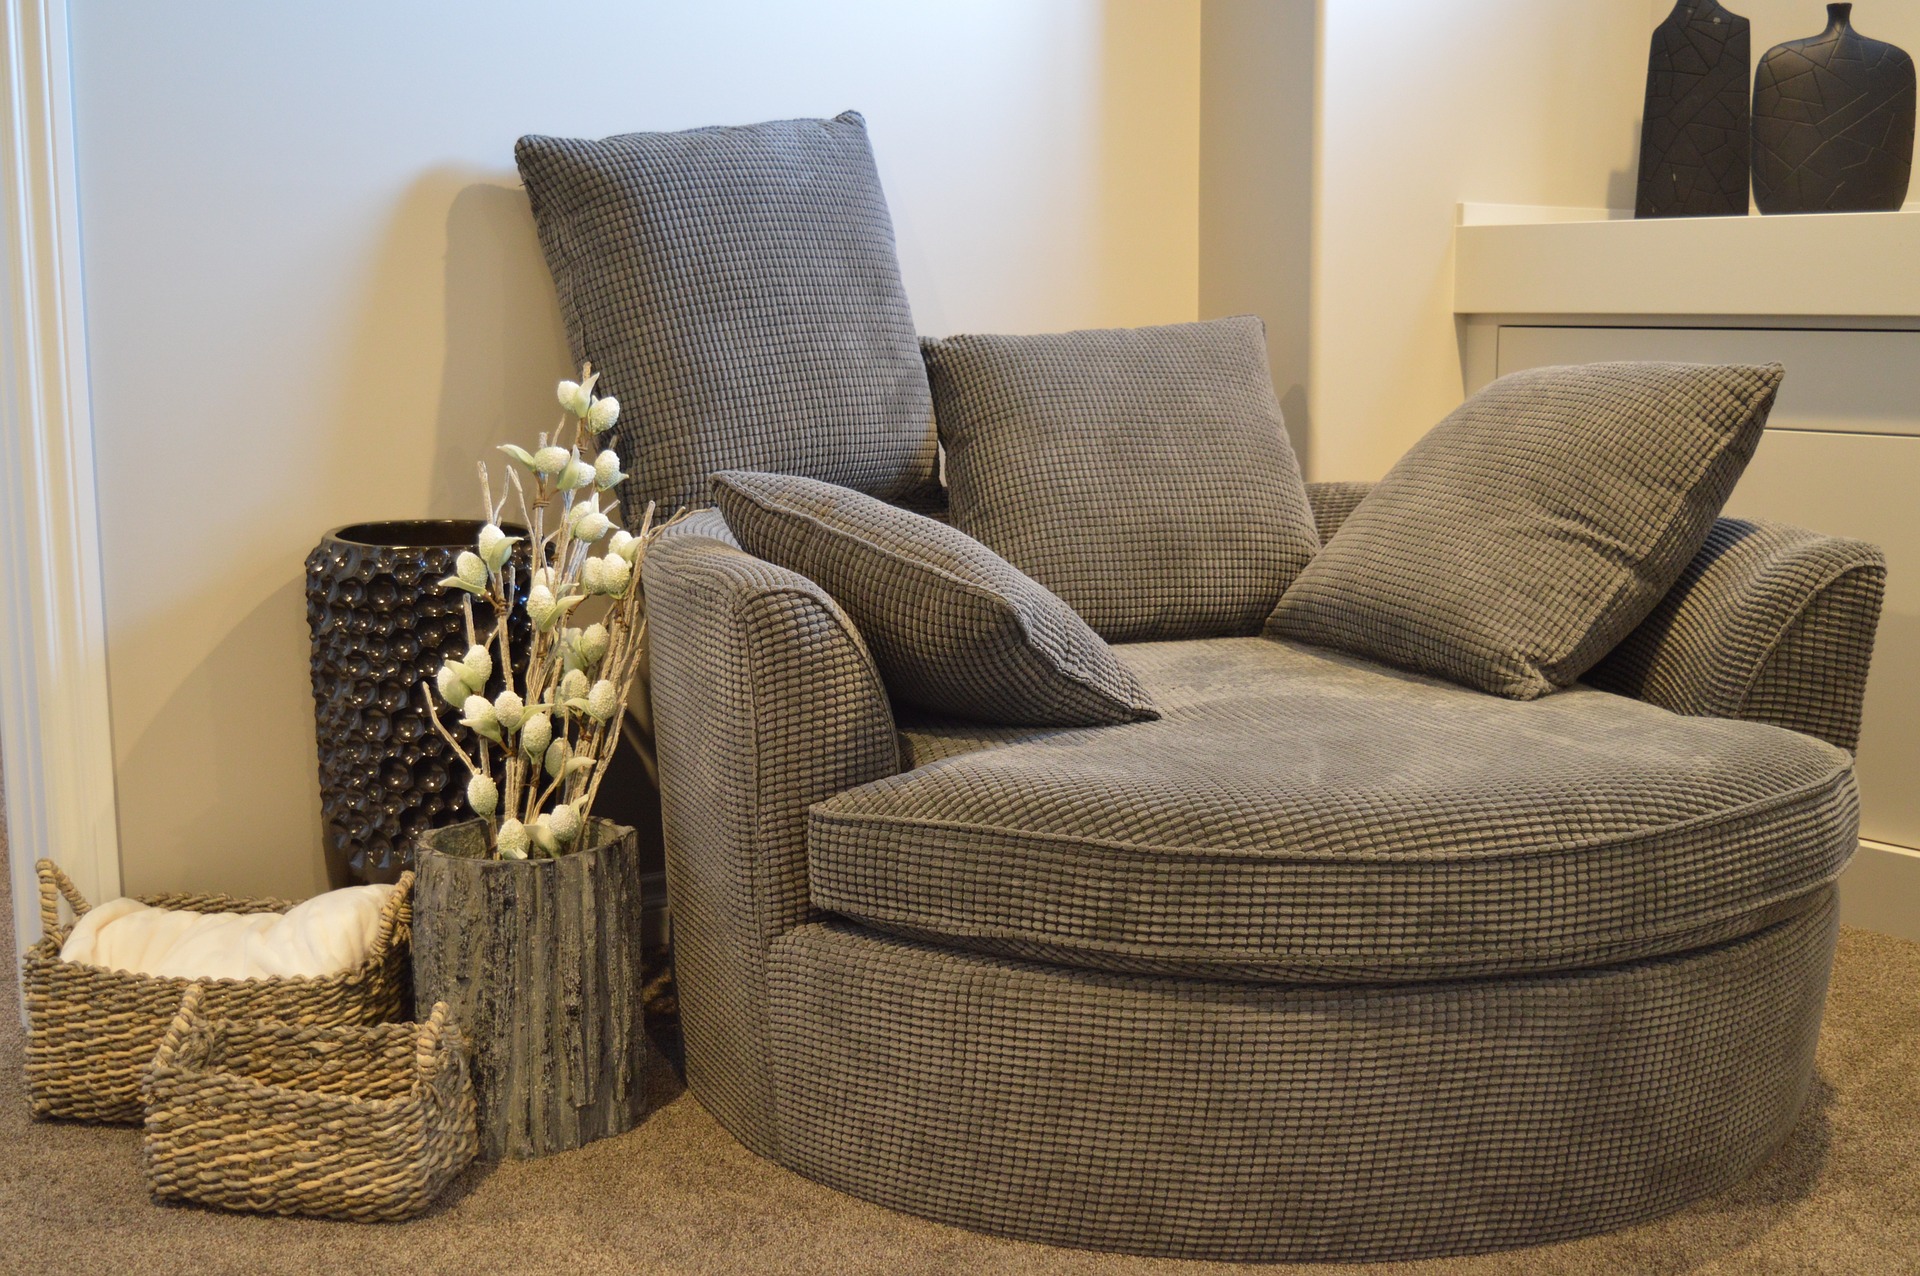 Styl skandynawski meble sofa poduszki dekoracje wyposazenie jak urzadzic aranzacje inspiracje dekoportal